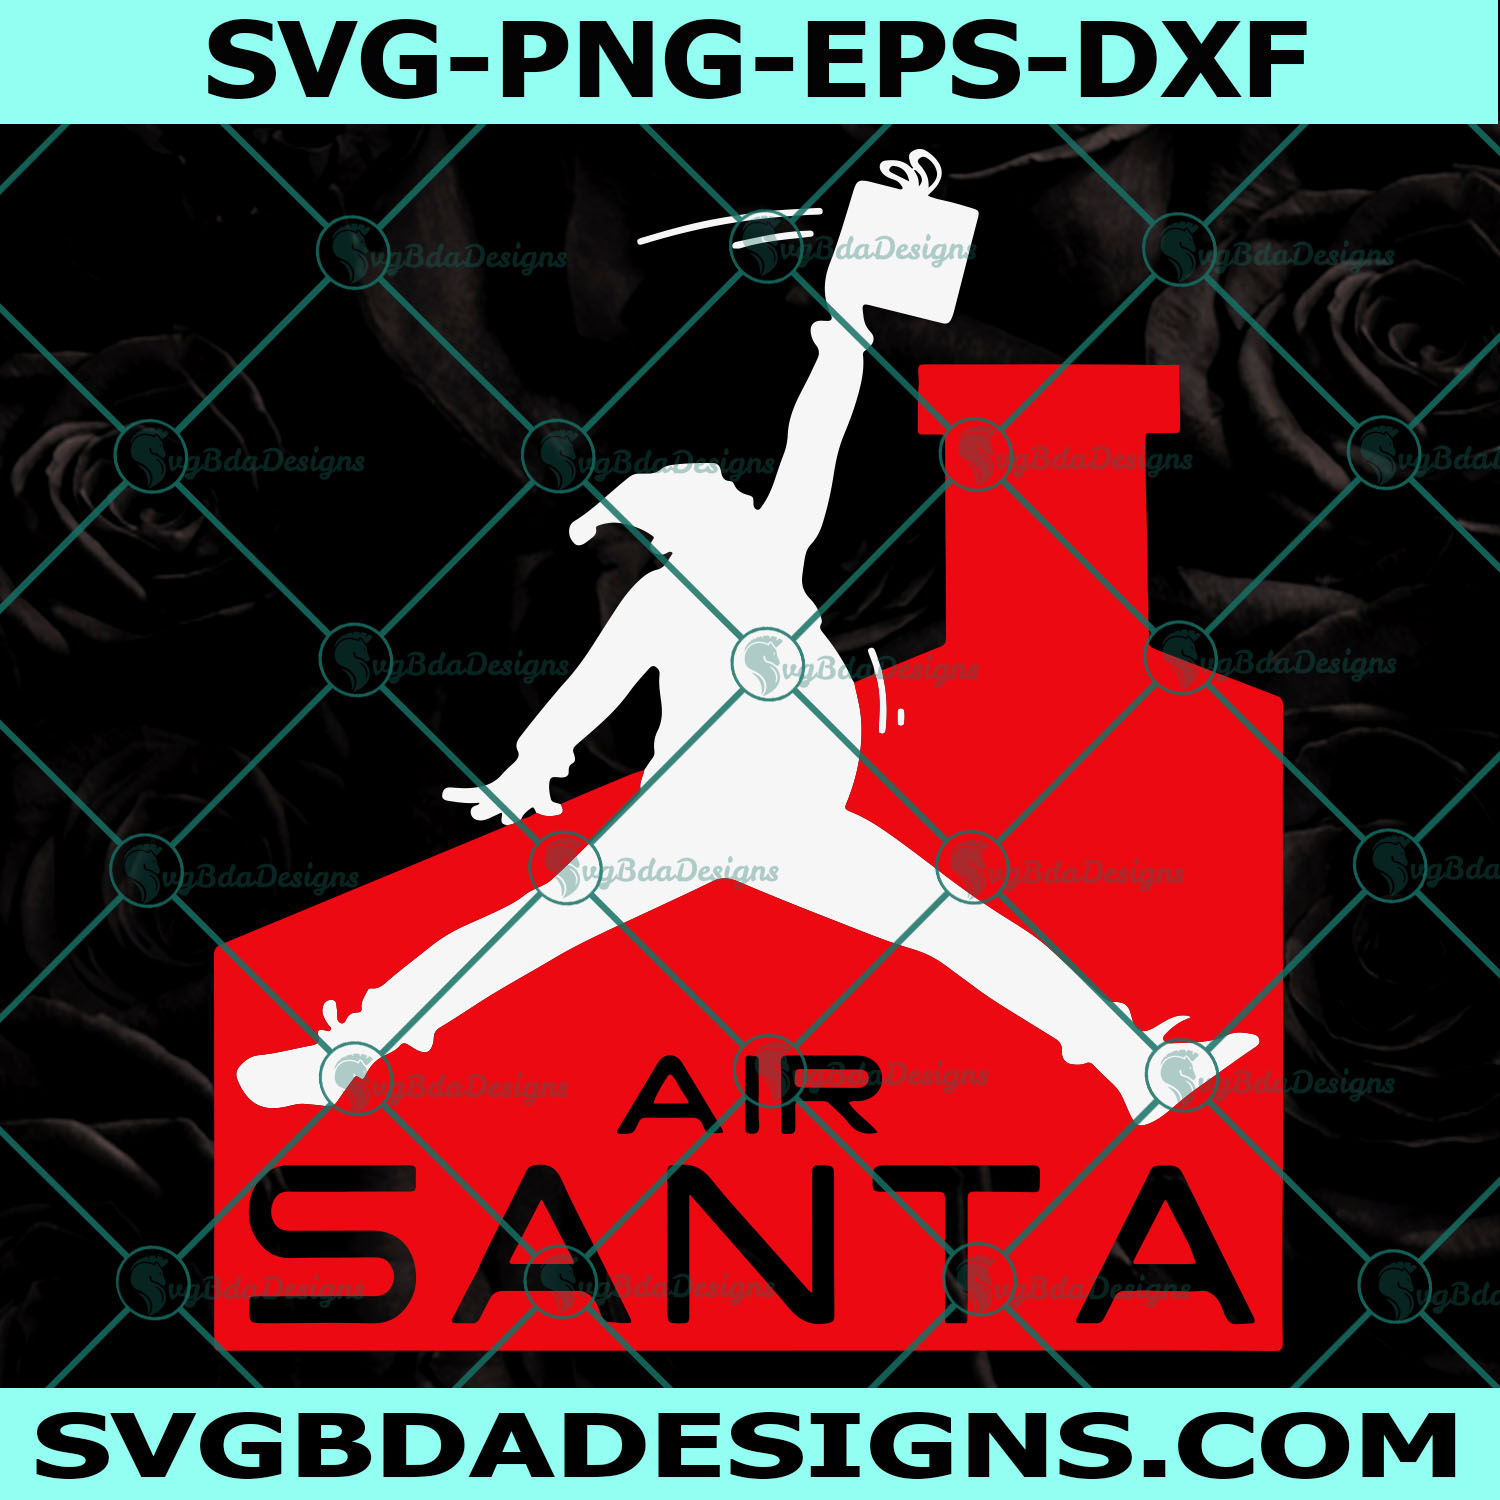 Air Santa Svg, Santa Claus Svg, Santa Svg, Air Santa Christmas Svg, Digital Download